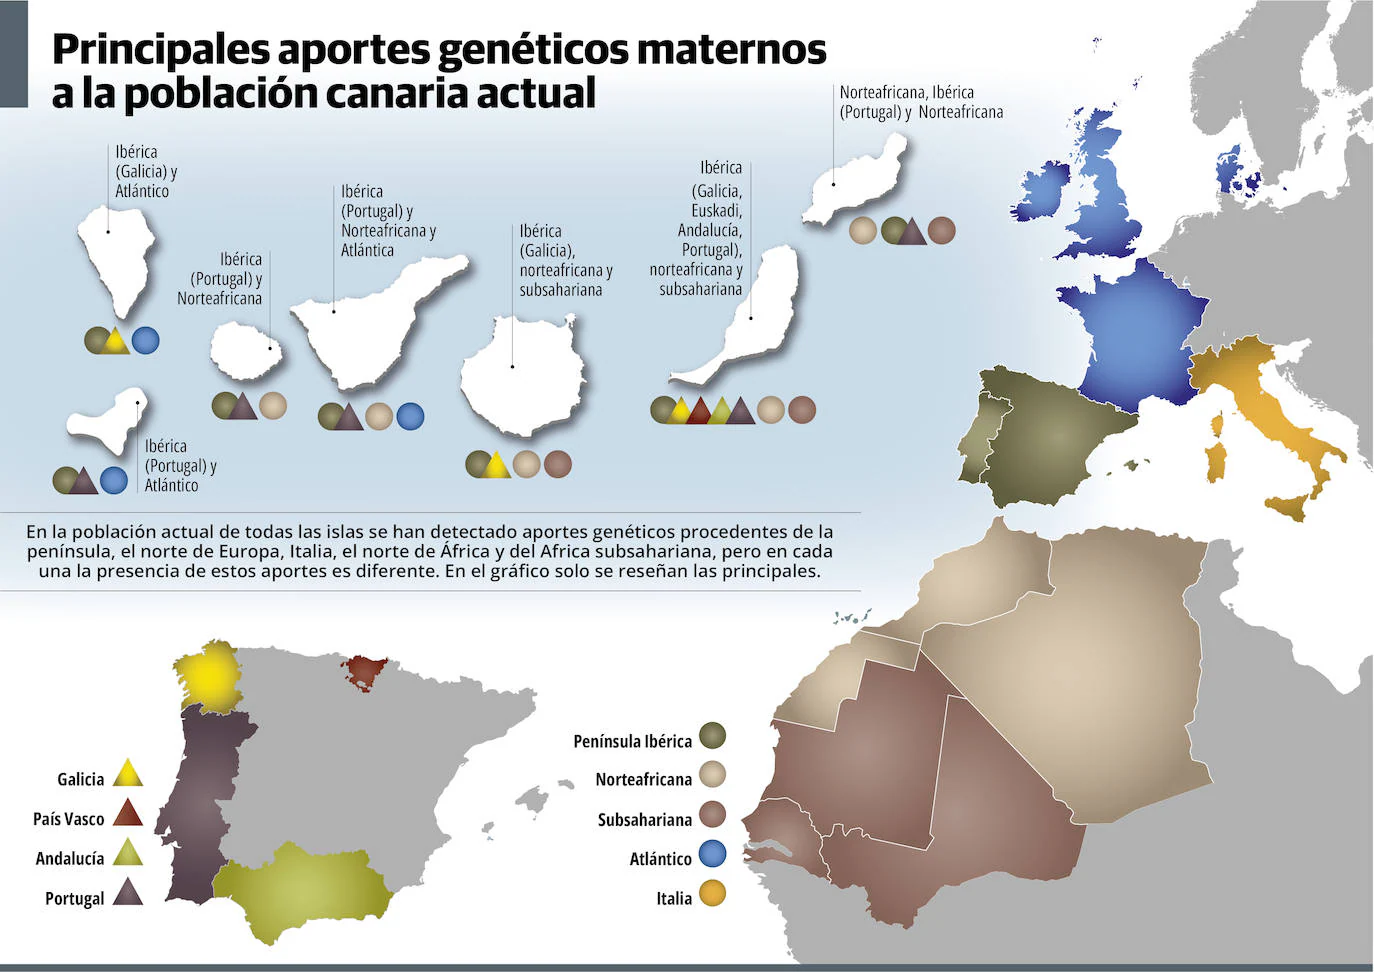 La mitad de la herencia genética materna de la población canaria actual proviene de las aborígenes